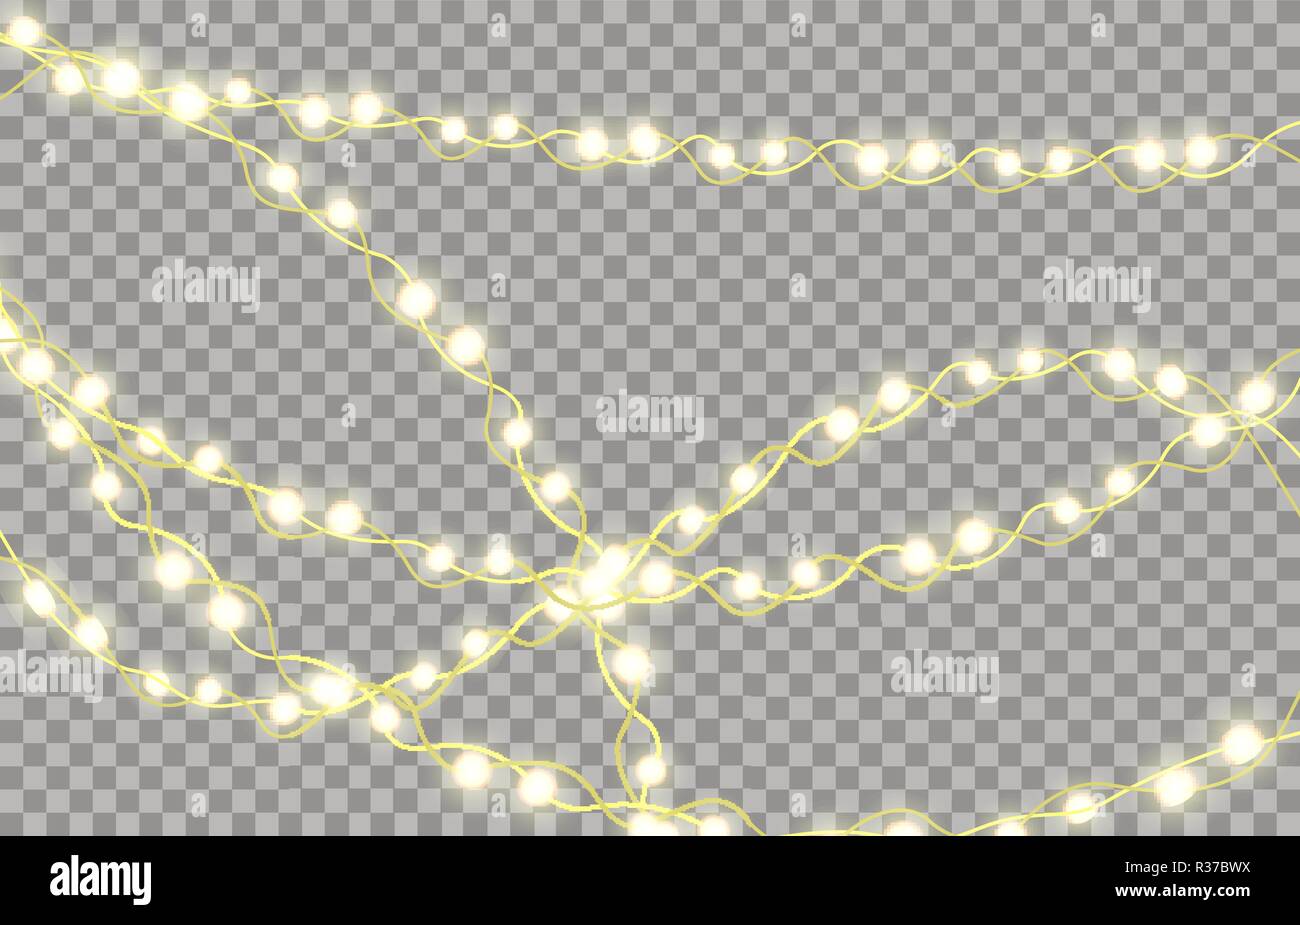 Colorida guirnalda resplandeciente para árboles de Navidad y Año Nuevo. Las luces decorativas LED carteles, vallas publicitarias sobre fondo transparente. Ilustración vectorial Ilustración del Vector